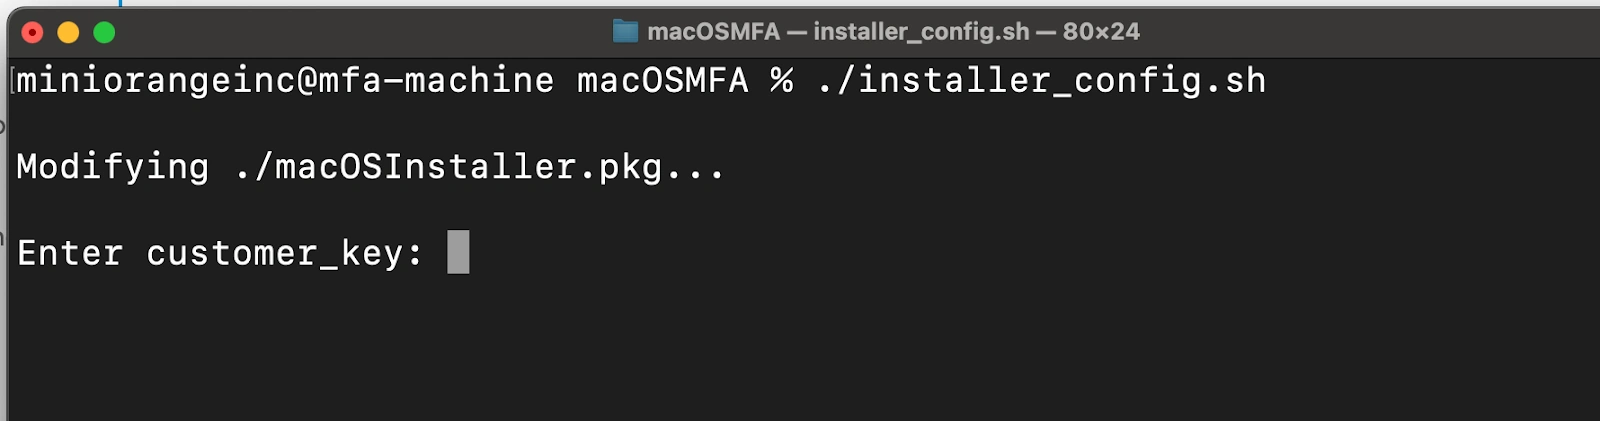 MacOS Multi-Factor Authentication 2FA/MFA